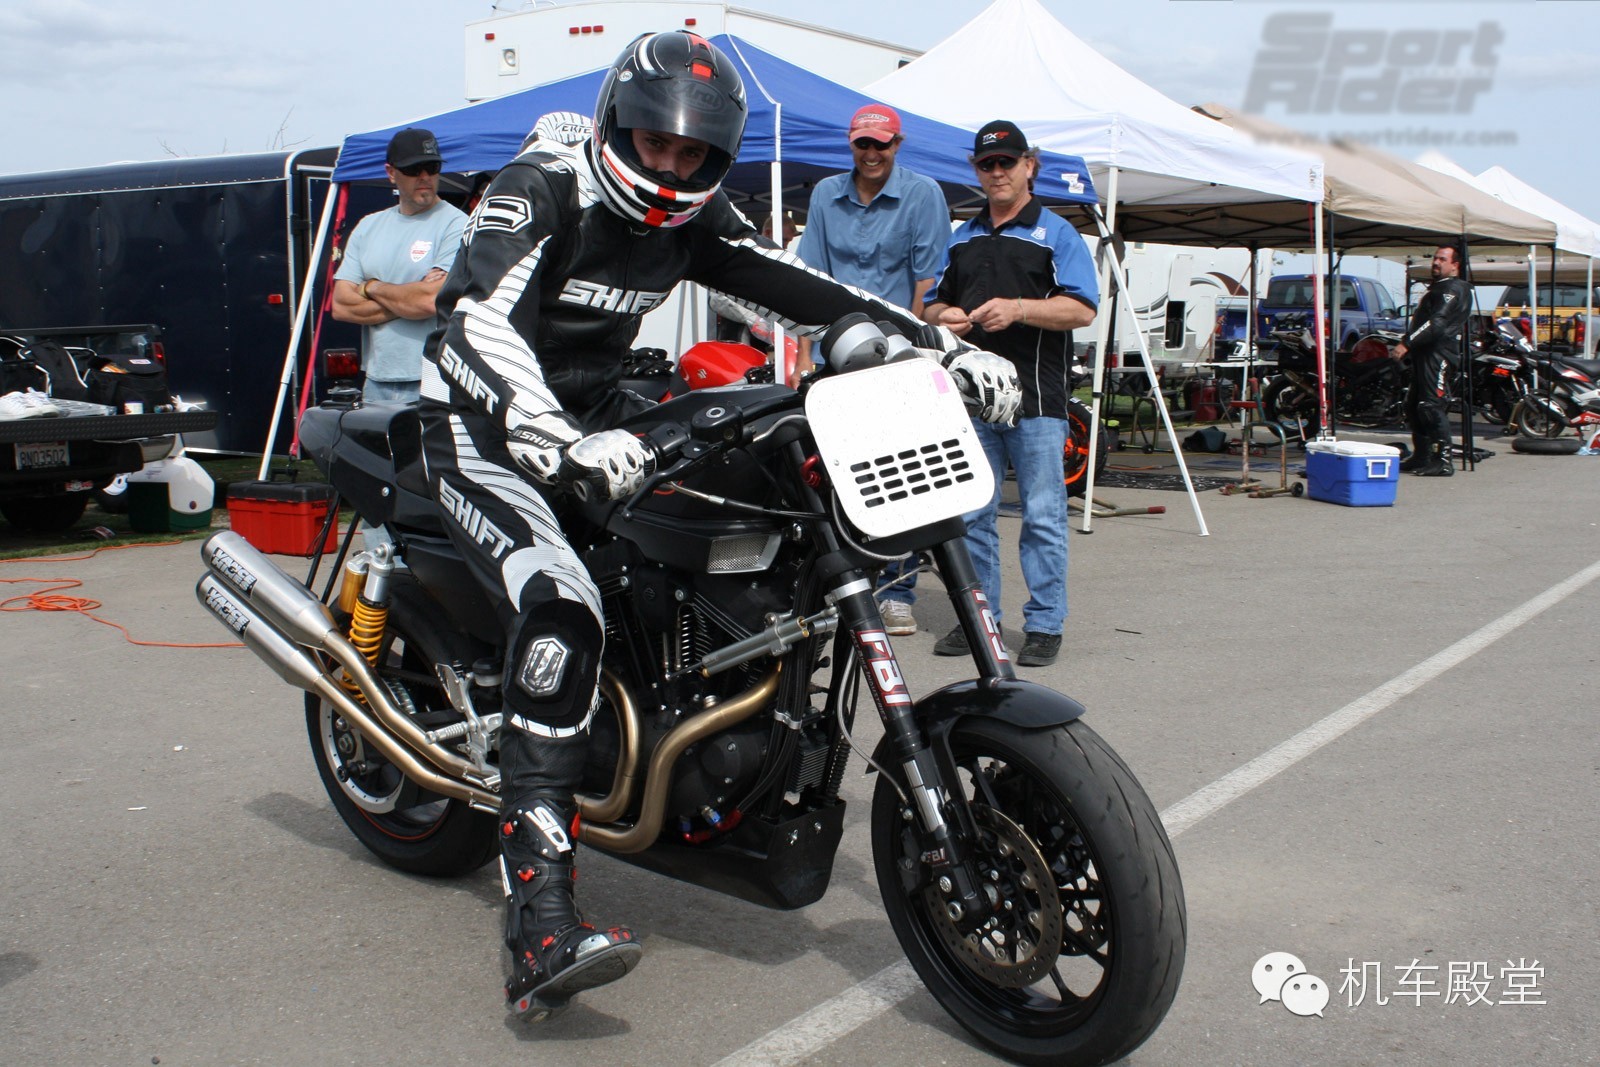 哈雷 XR1200摩托车在急速弯道的操控是最强的